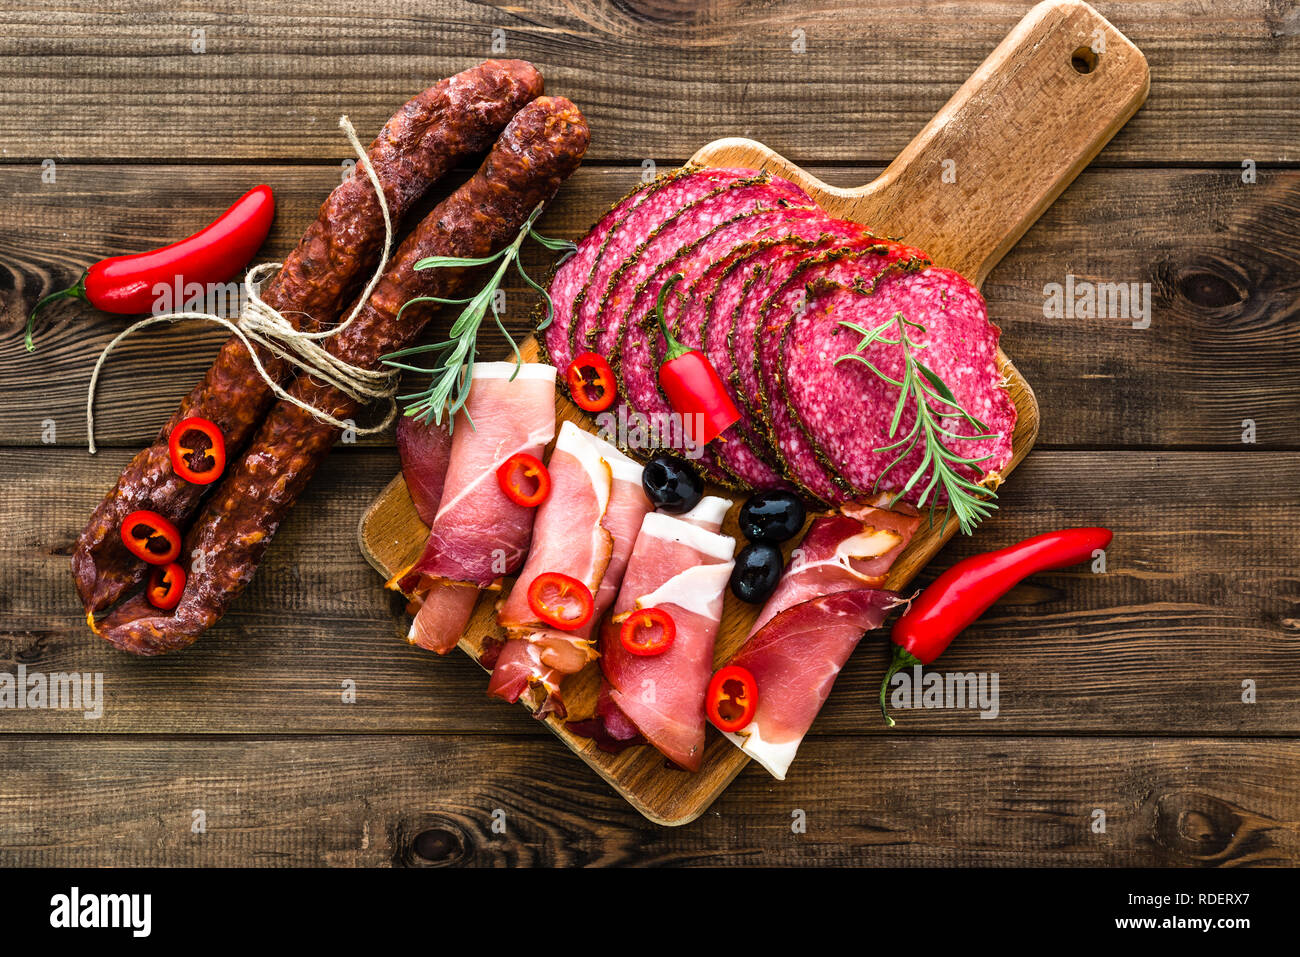 Tapas tradizionali spagnole il cibo da bar sul piatto da portata, selezione di carne fredda, salsiccia, chorizo, fette di salame, prosciutto sul tavolo di legno Foto Stock